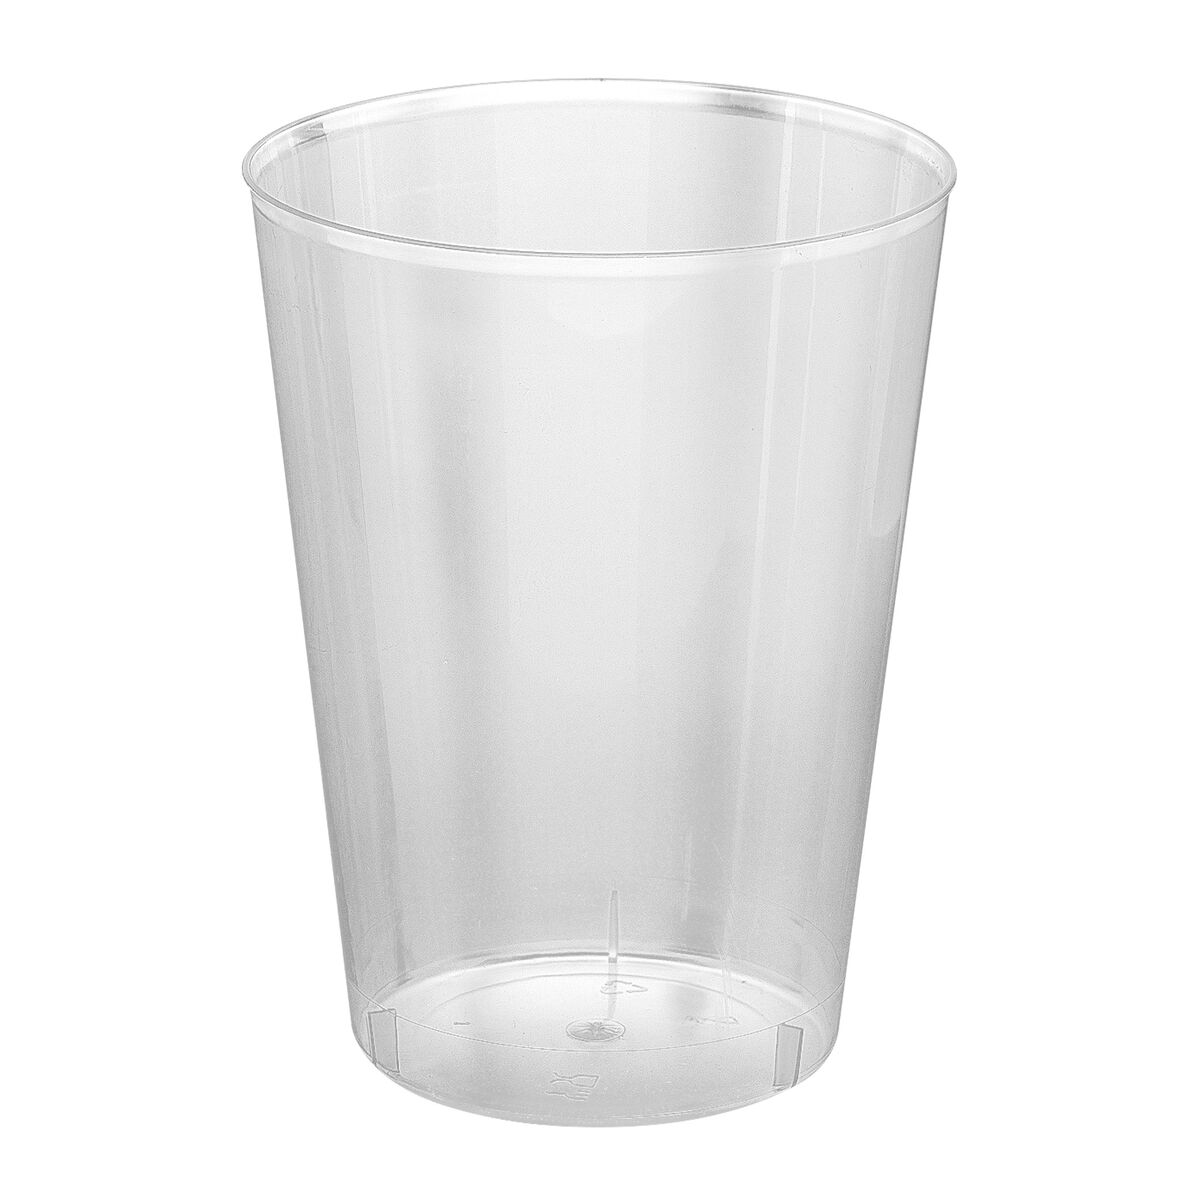 Σετ επαναχρησιμοποιήσιμων ποτήριων Algon Μηλίτης Διαφανές 4 Τεμάχια 480 ml (50 Μονάδες)